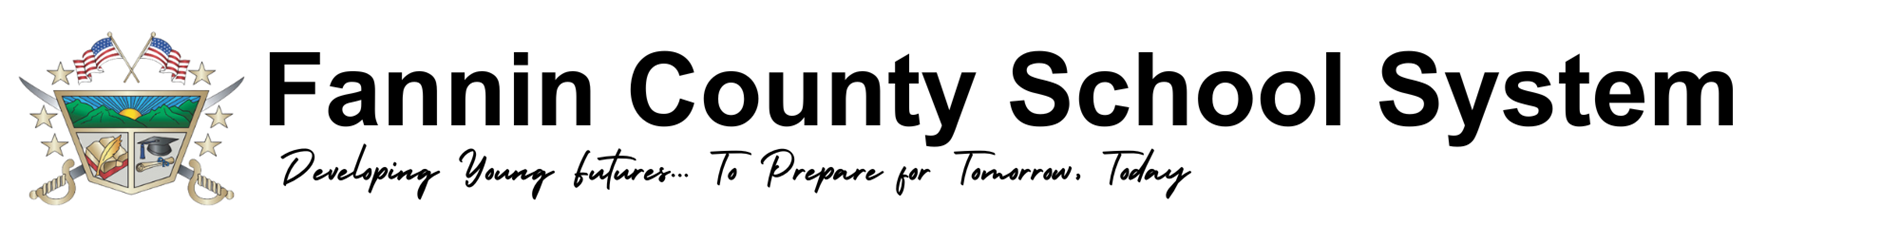 Fannin County School System Website Header